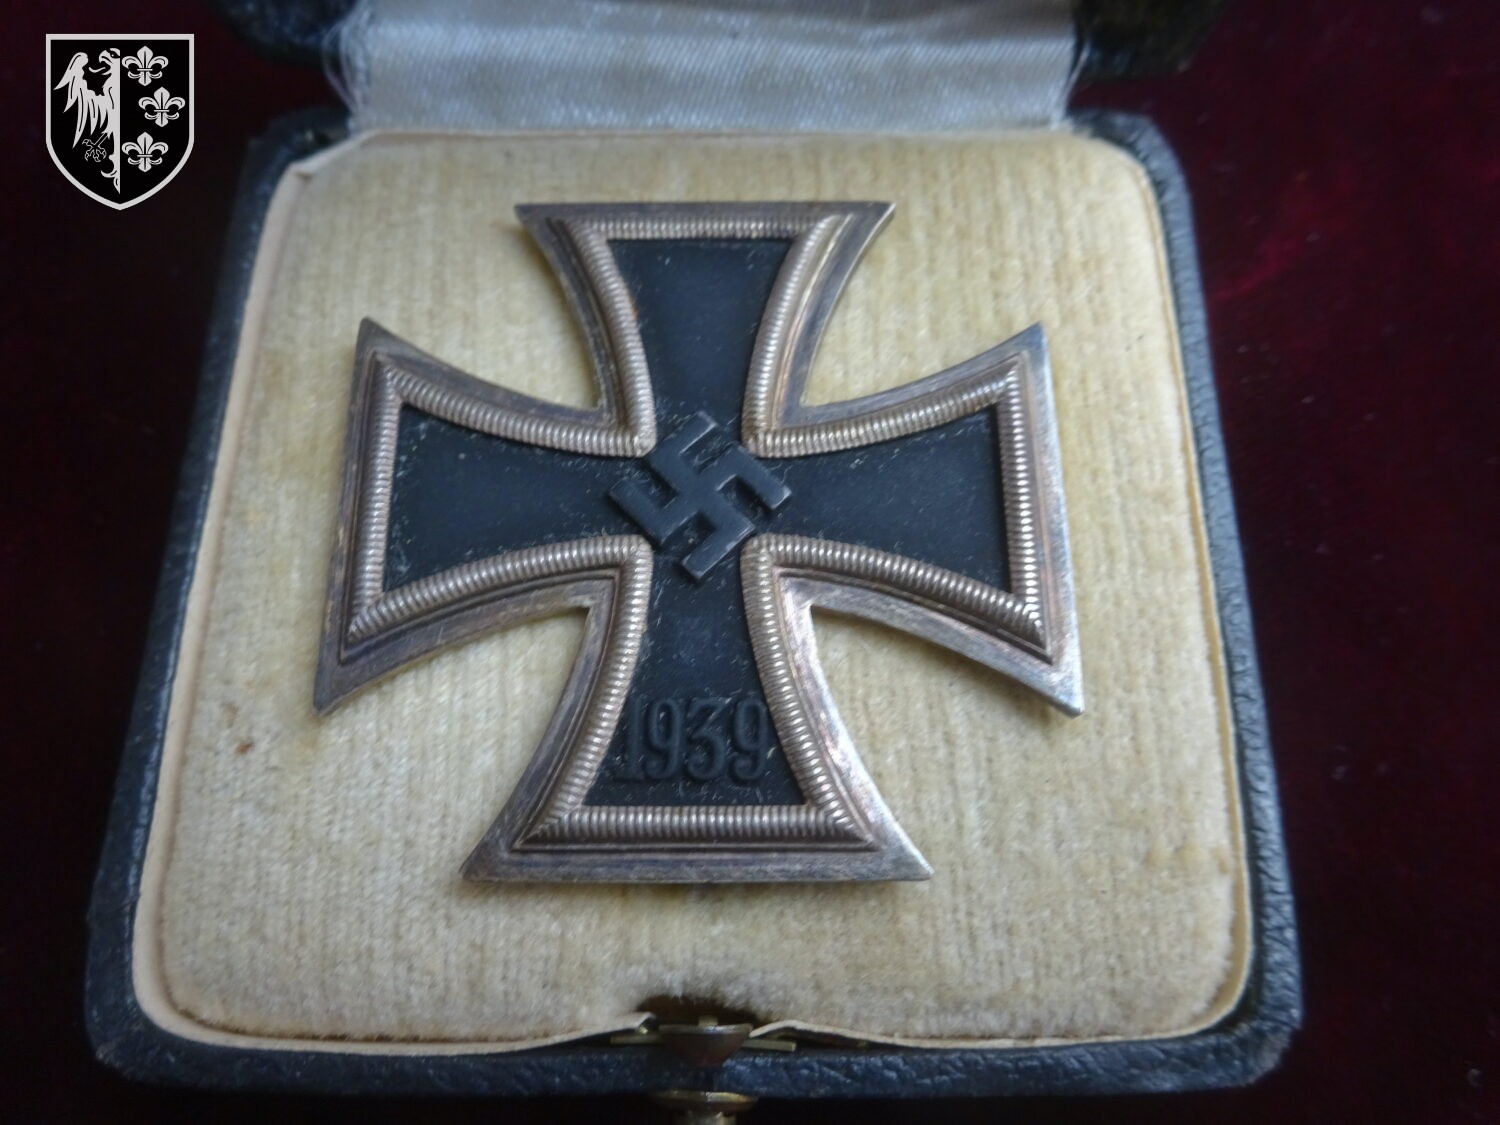 Croix de fer première classe - militaria allemand WWII